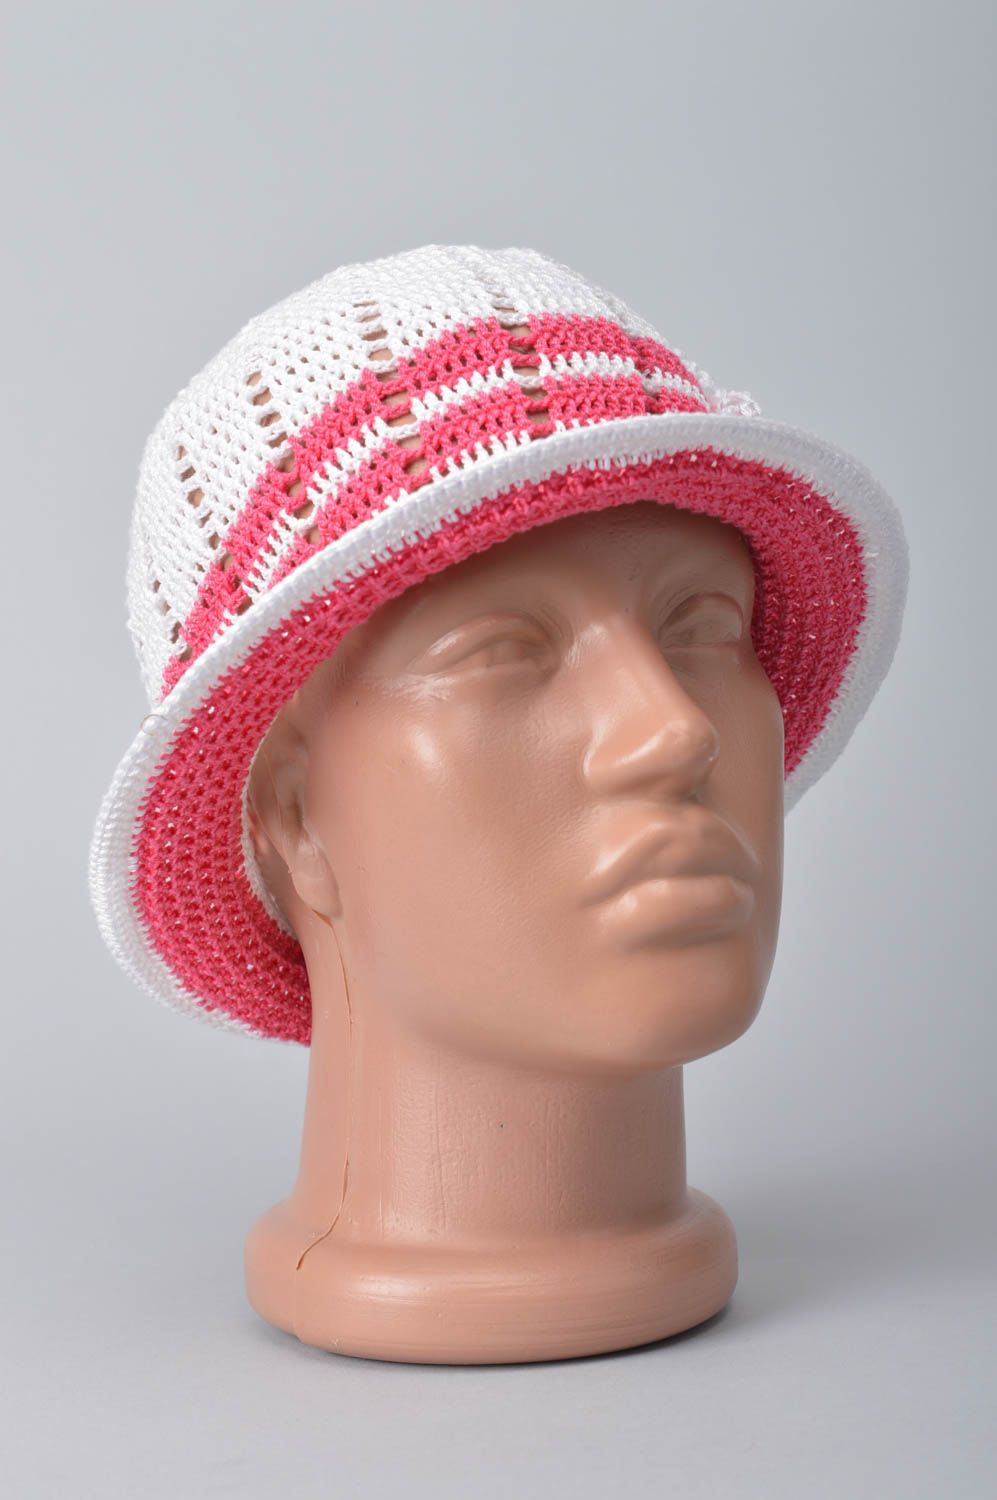 Панамка ручной работы весенняя шапка вязаная панамка для детей розовая с белым фото 1